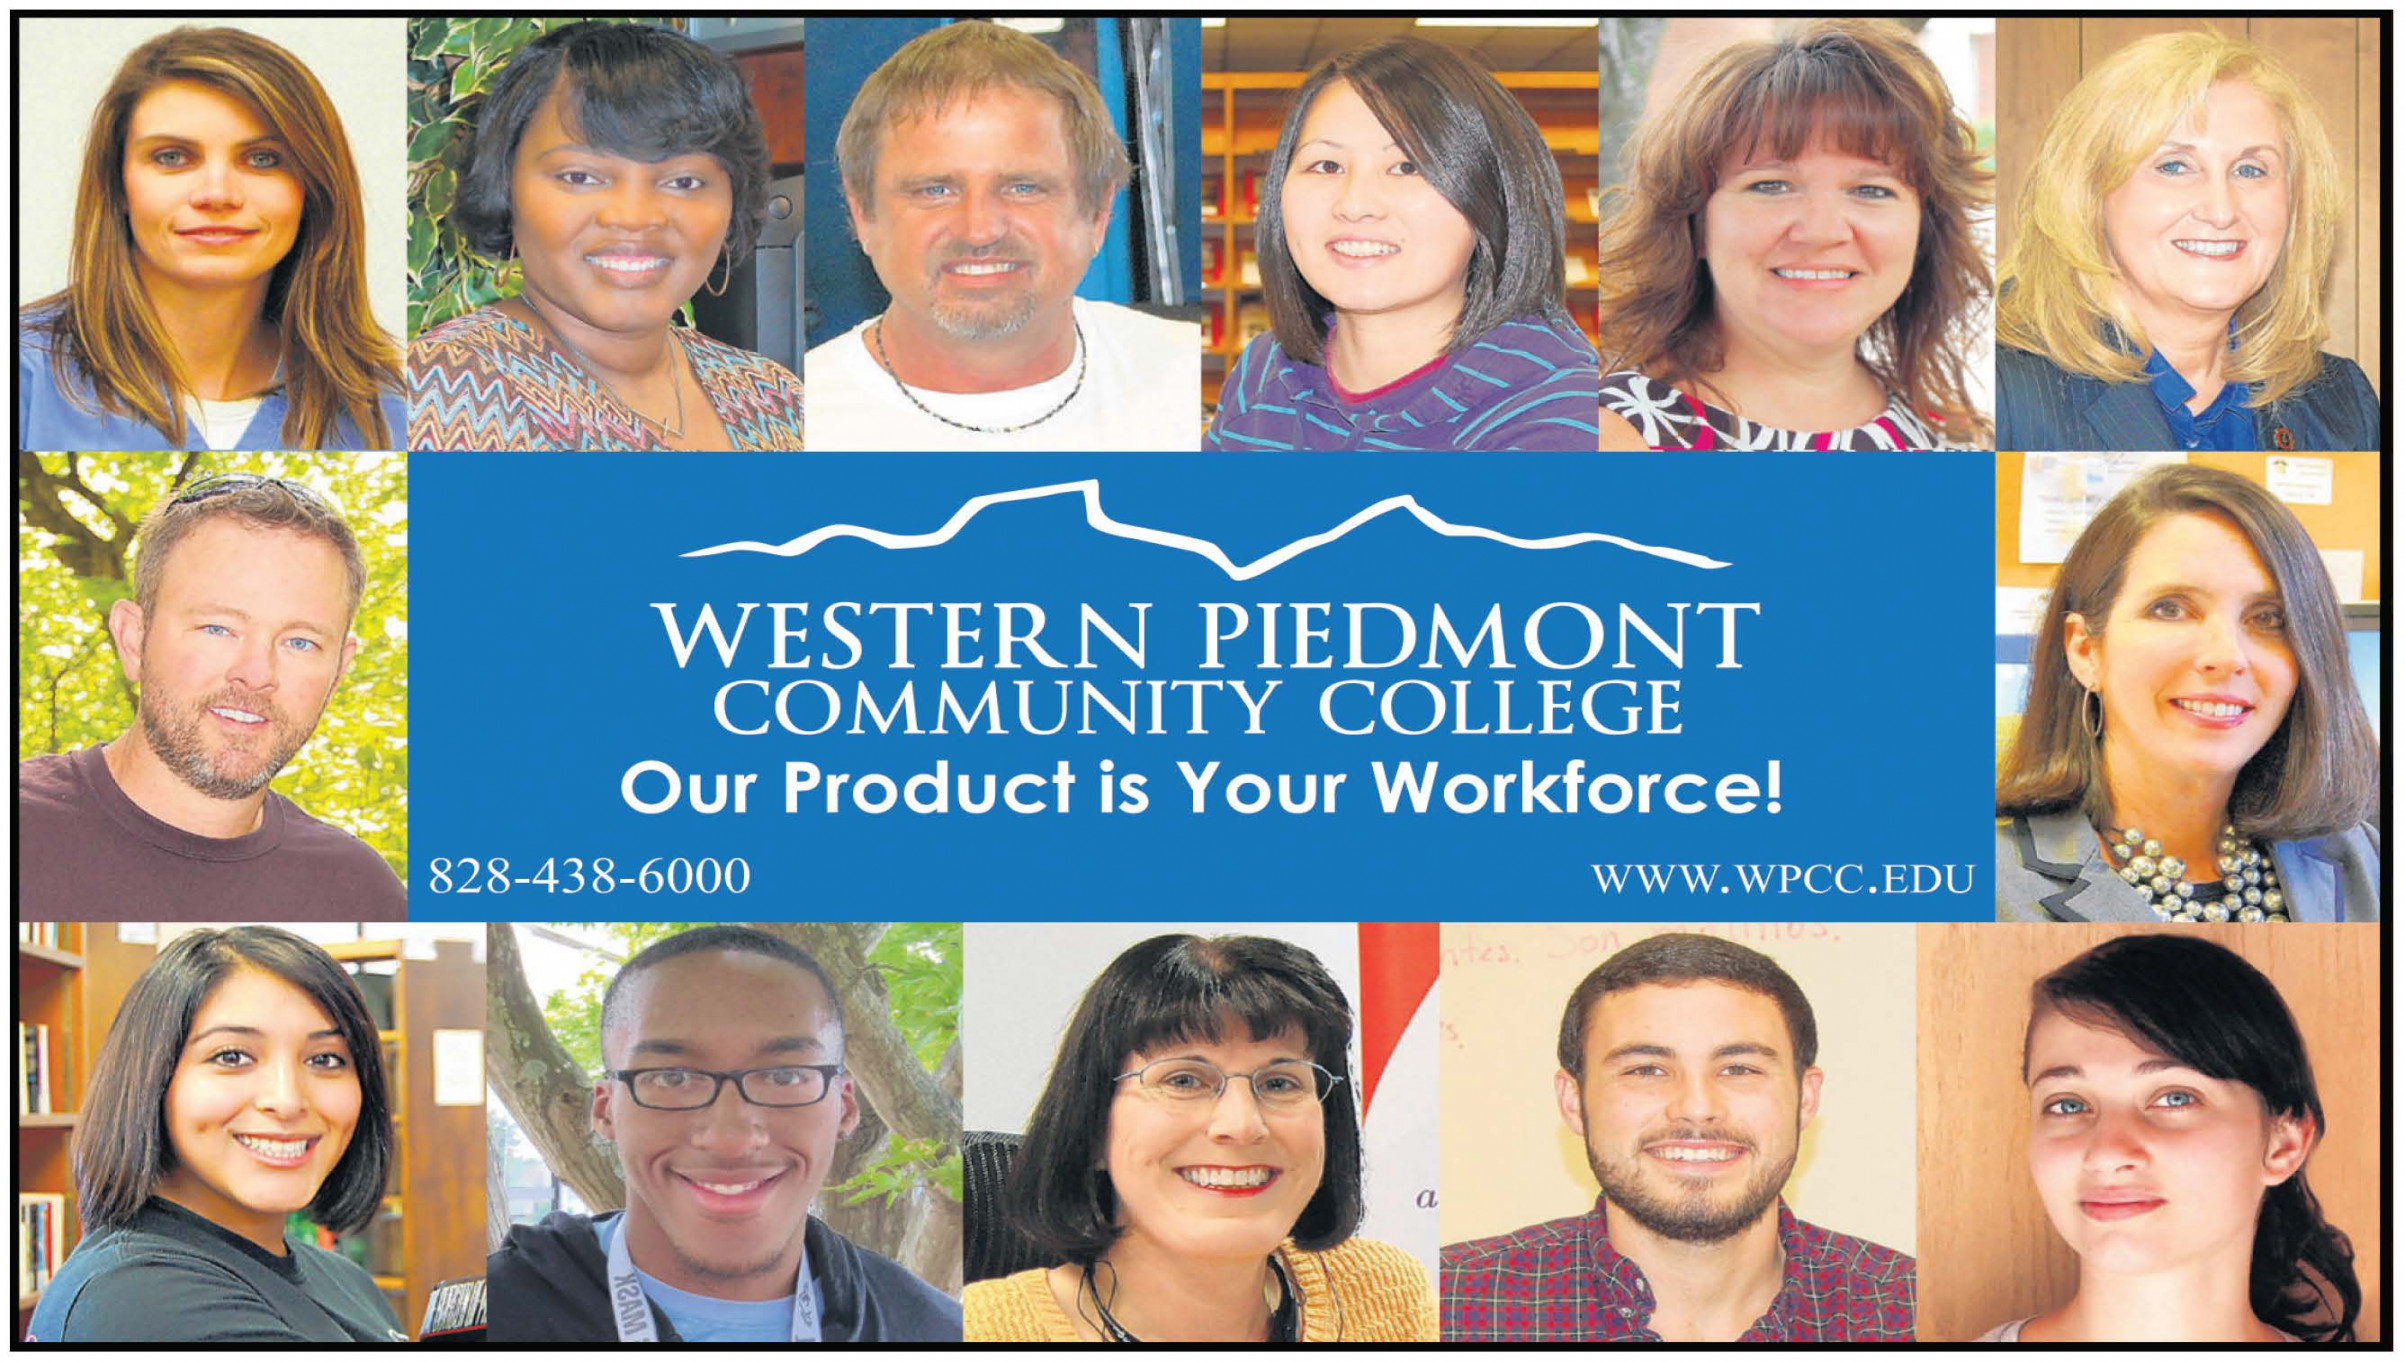 Workforce Development - Western Piedmont Community College